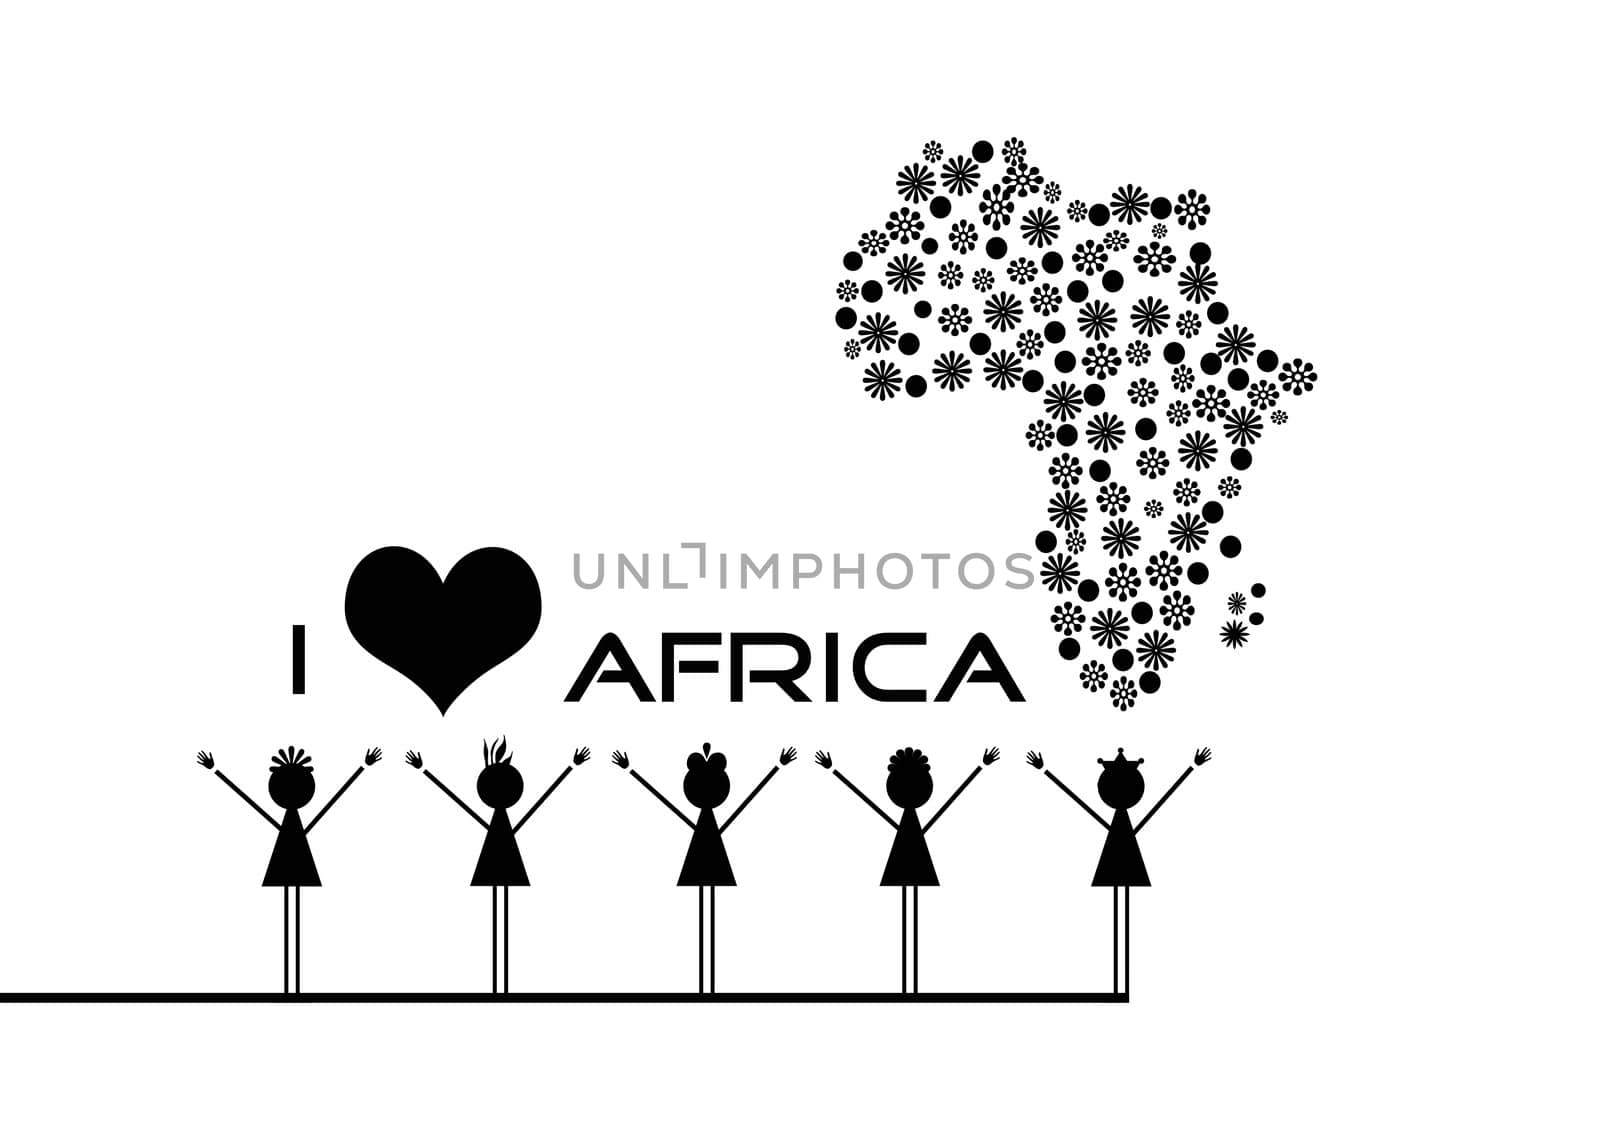 African children by africa